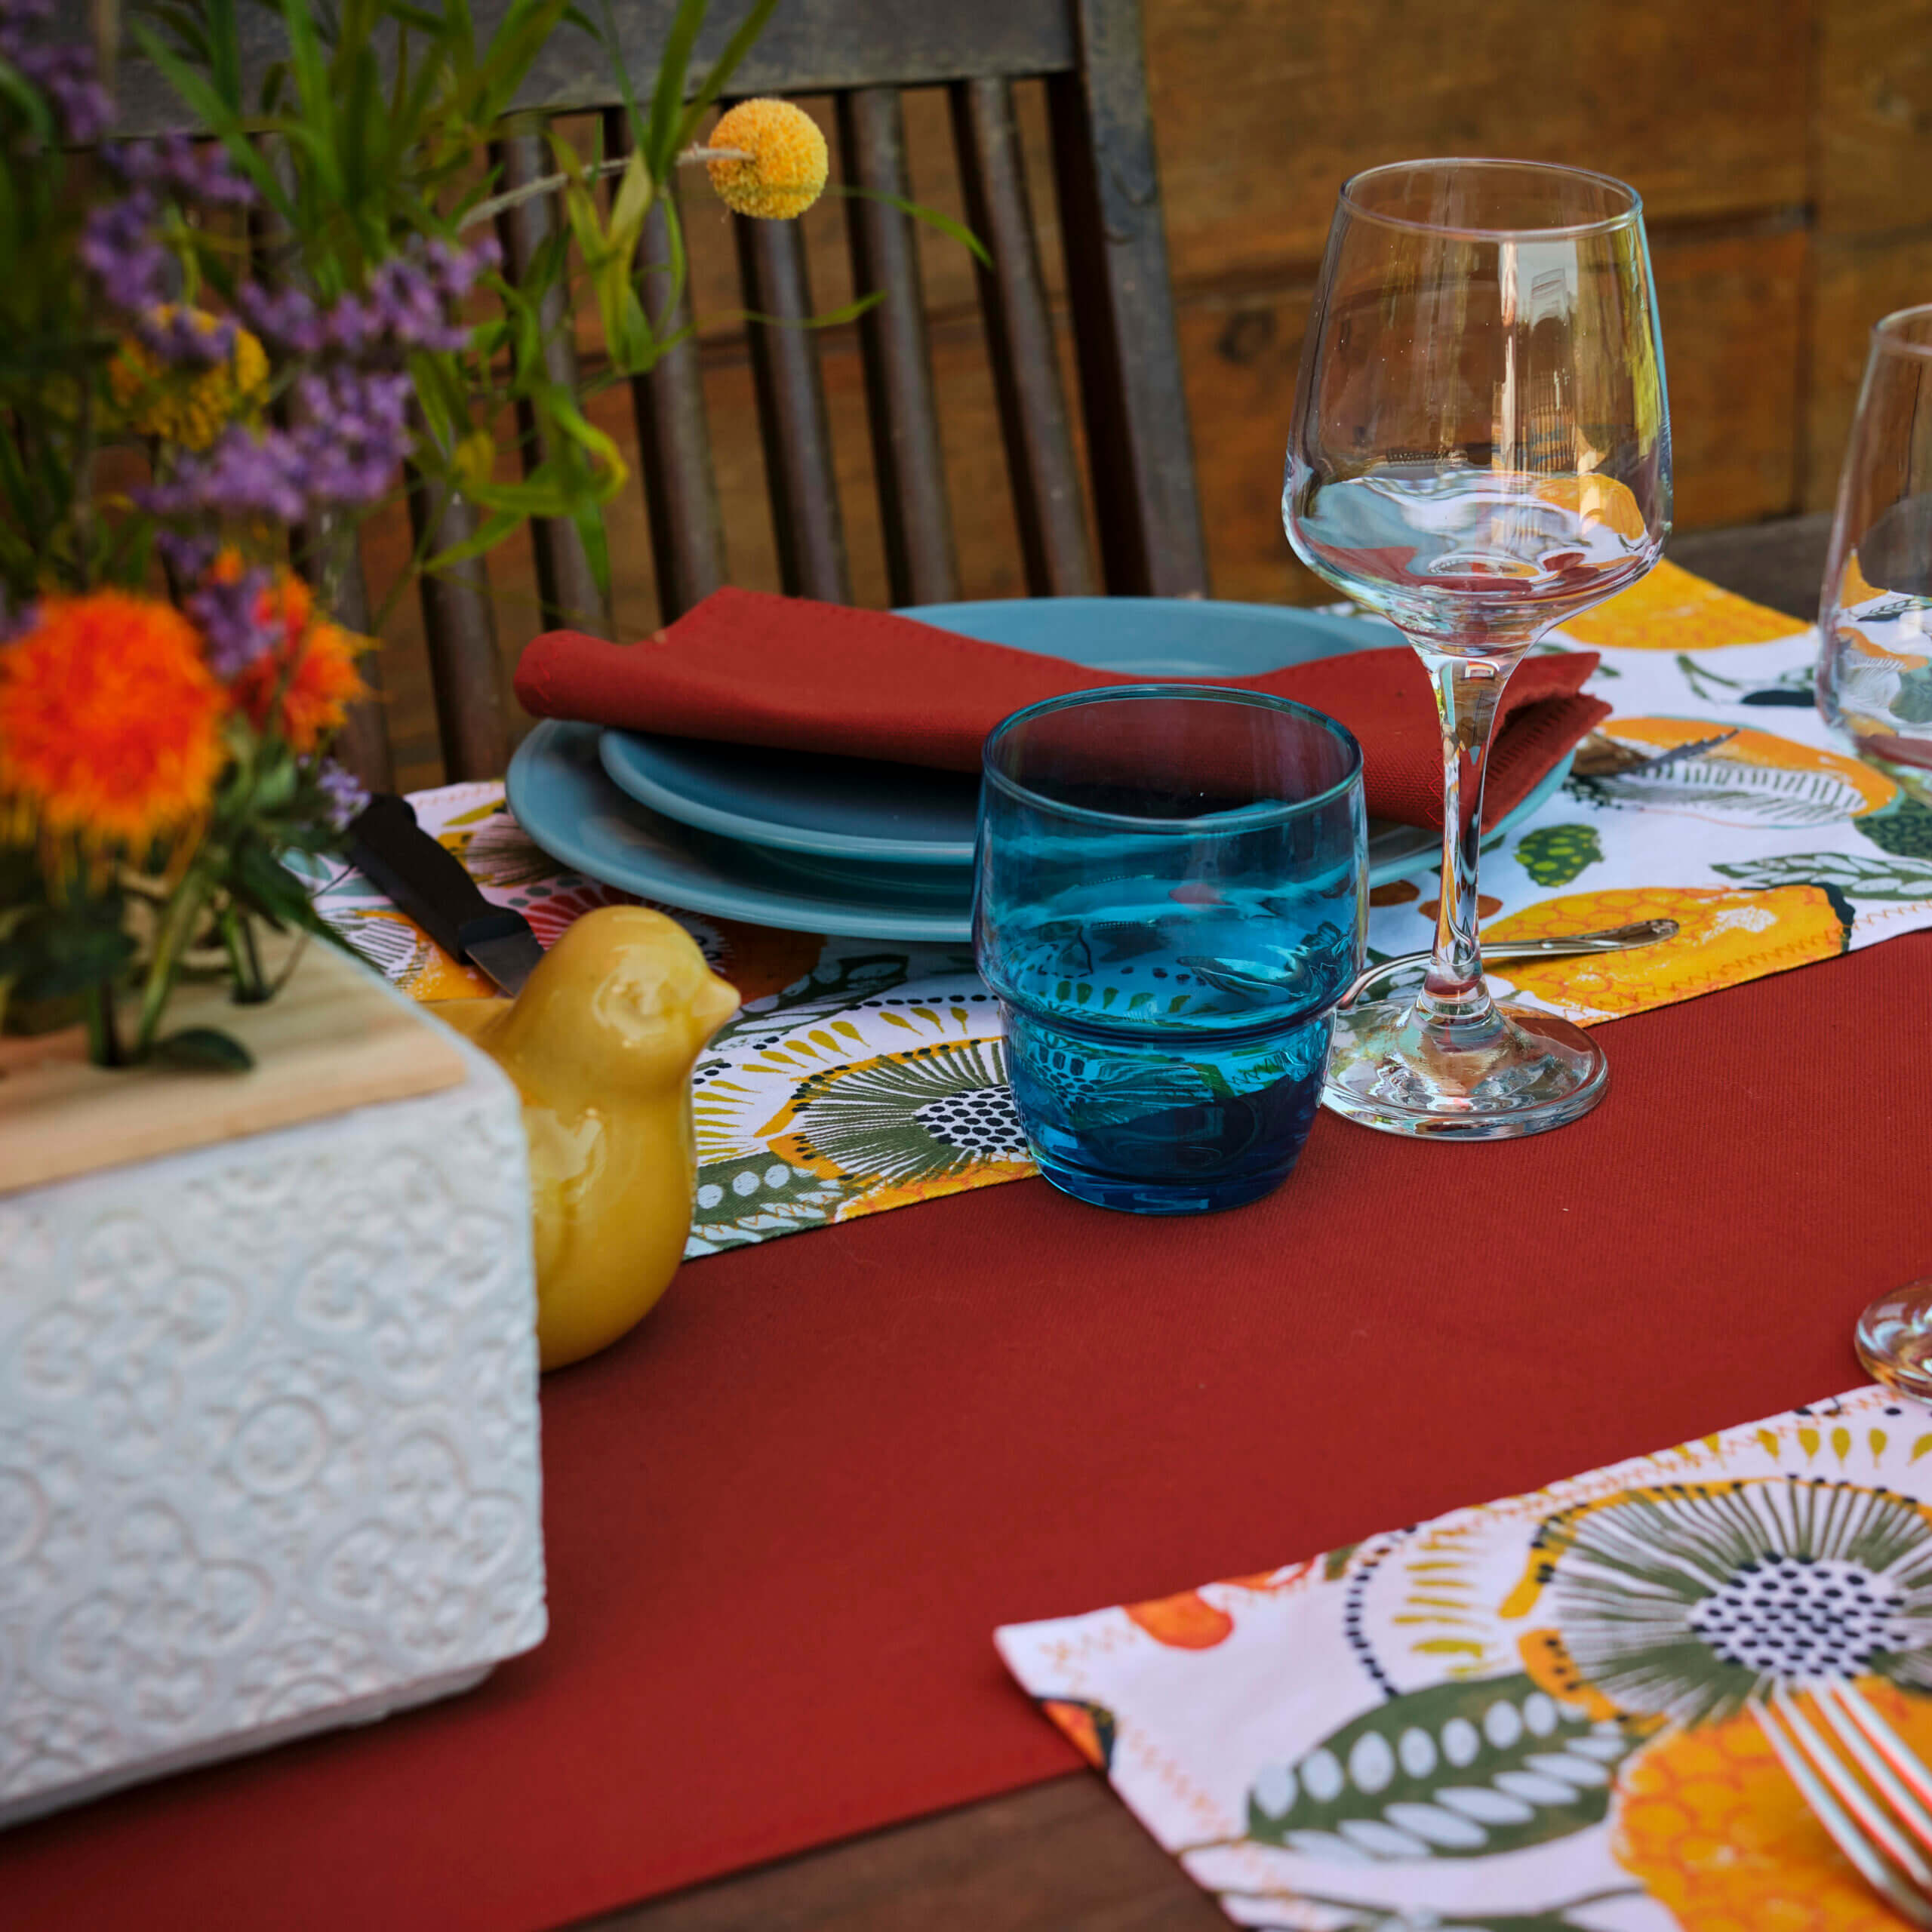 Table extérieure décorée par Georgette MagritteS. Chemin de table rouge, assiettes et verres bleus, serviettes rouges, fleurs. #wawwlatable